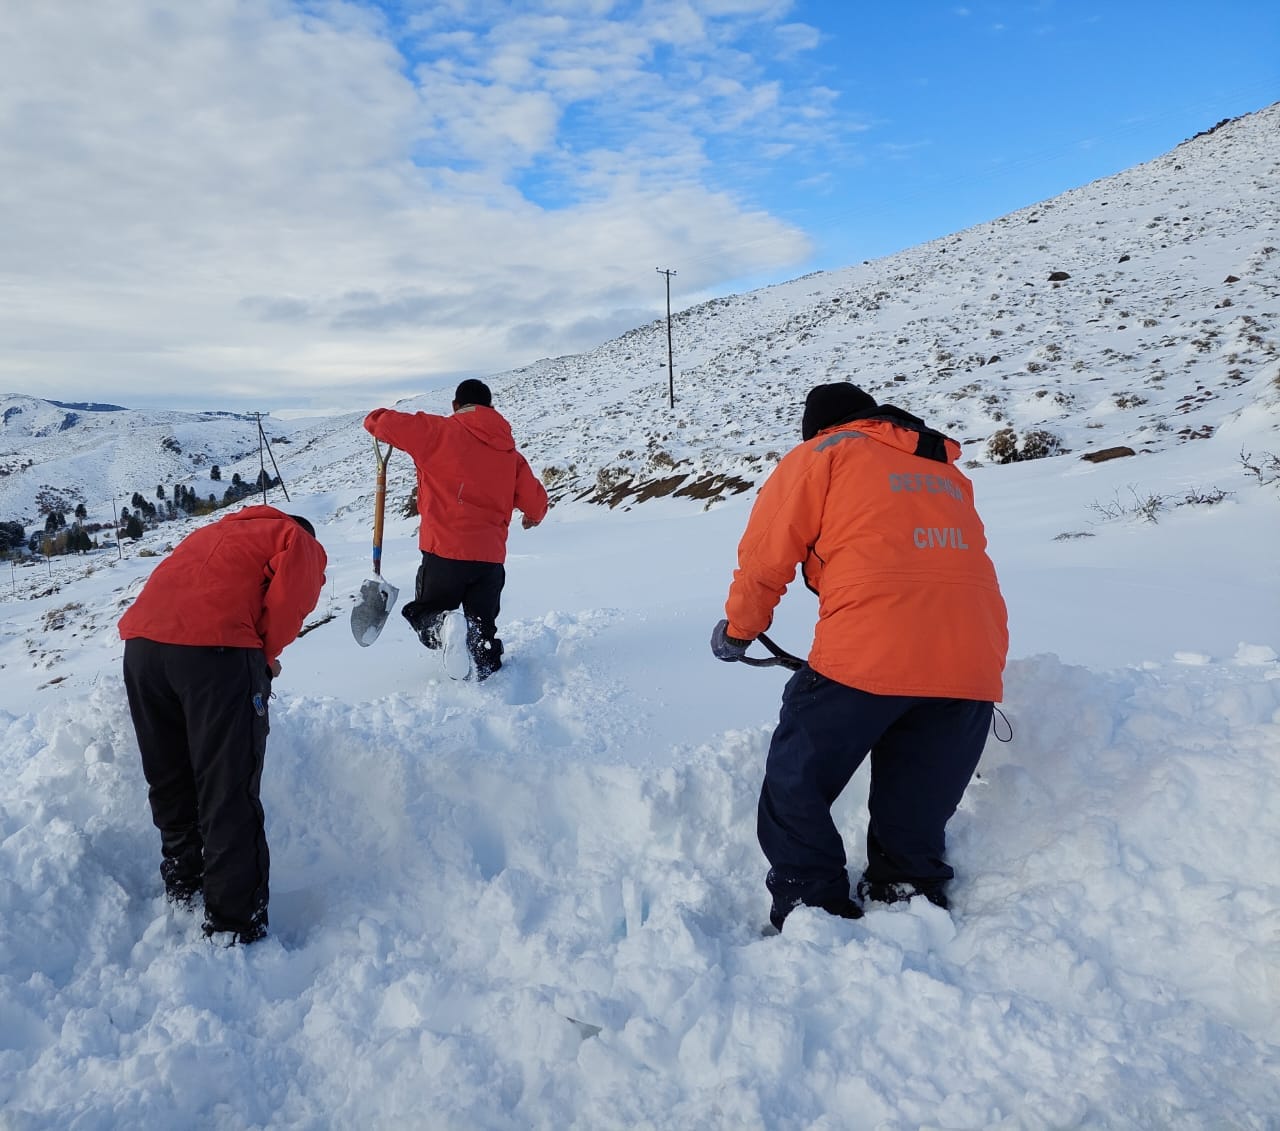 Con palas debieron despejar la nieve del camino. Foto: Prensa Parque Nacional Lanín